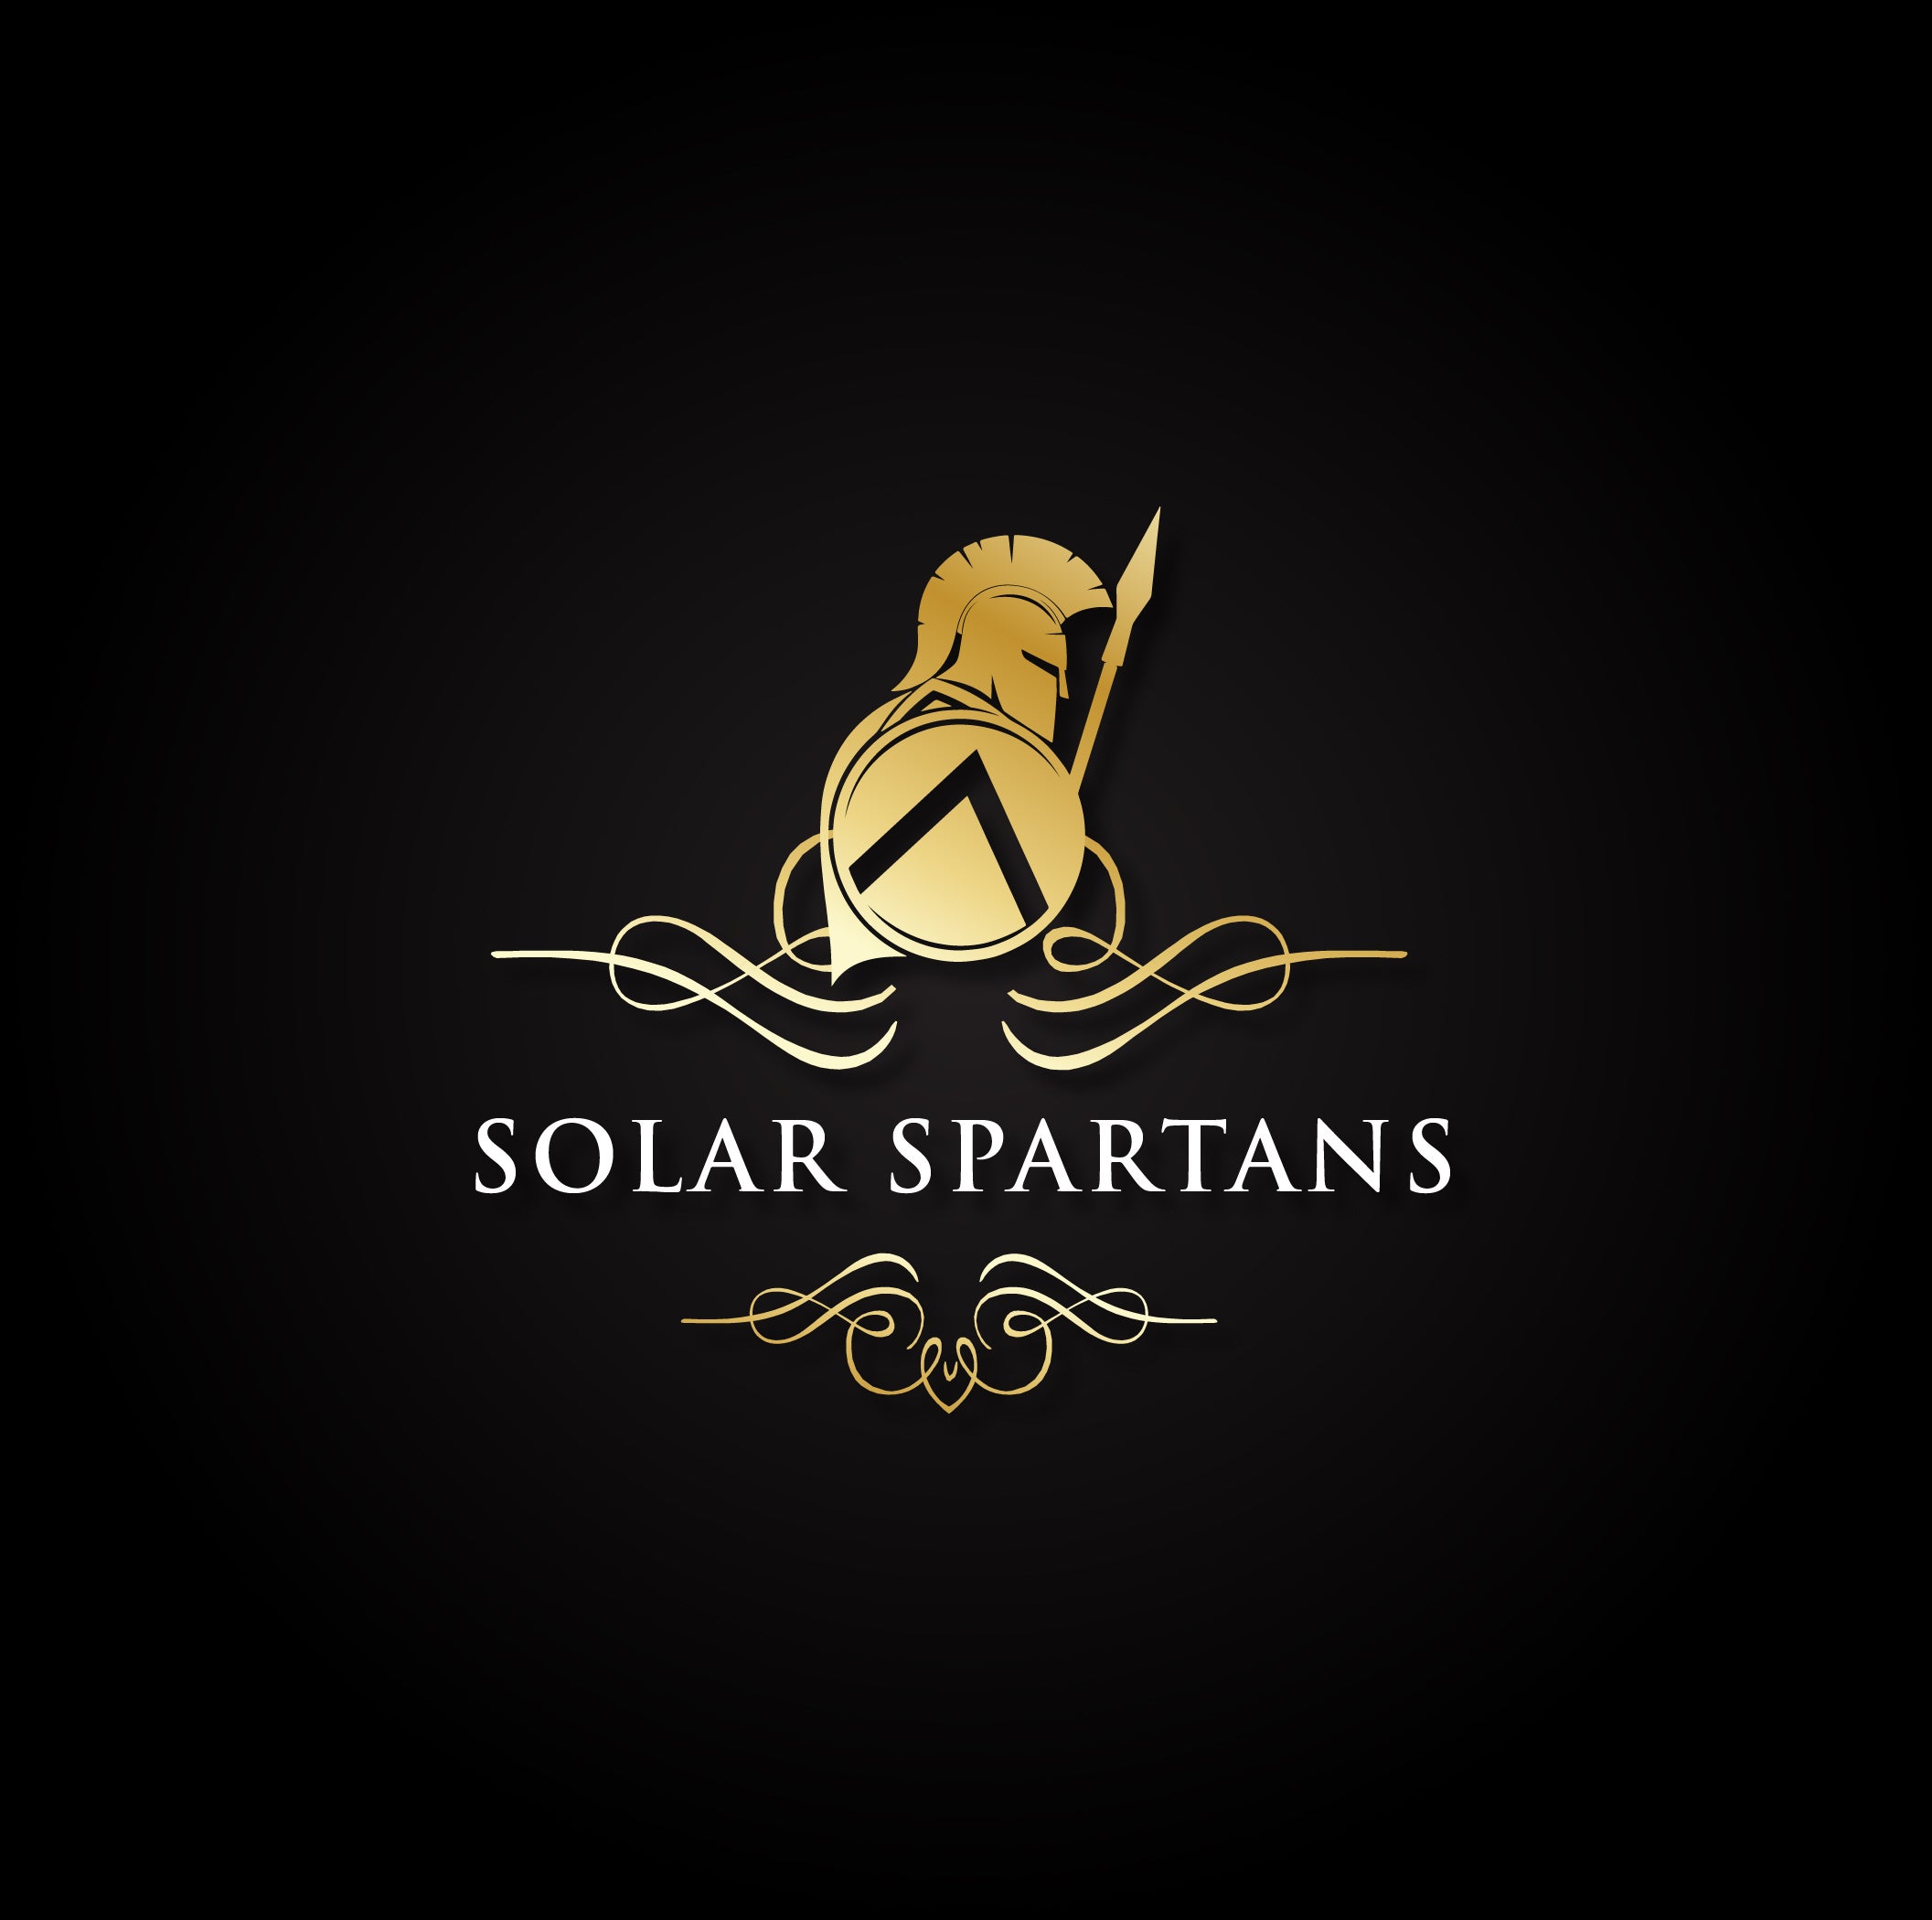 Solar Spartans logo